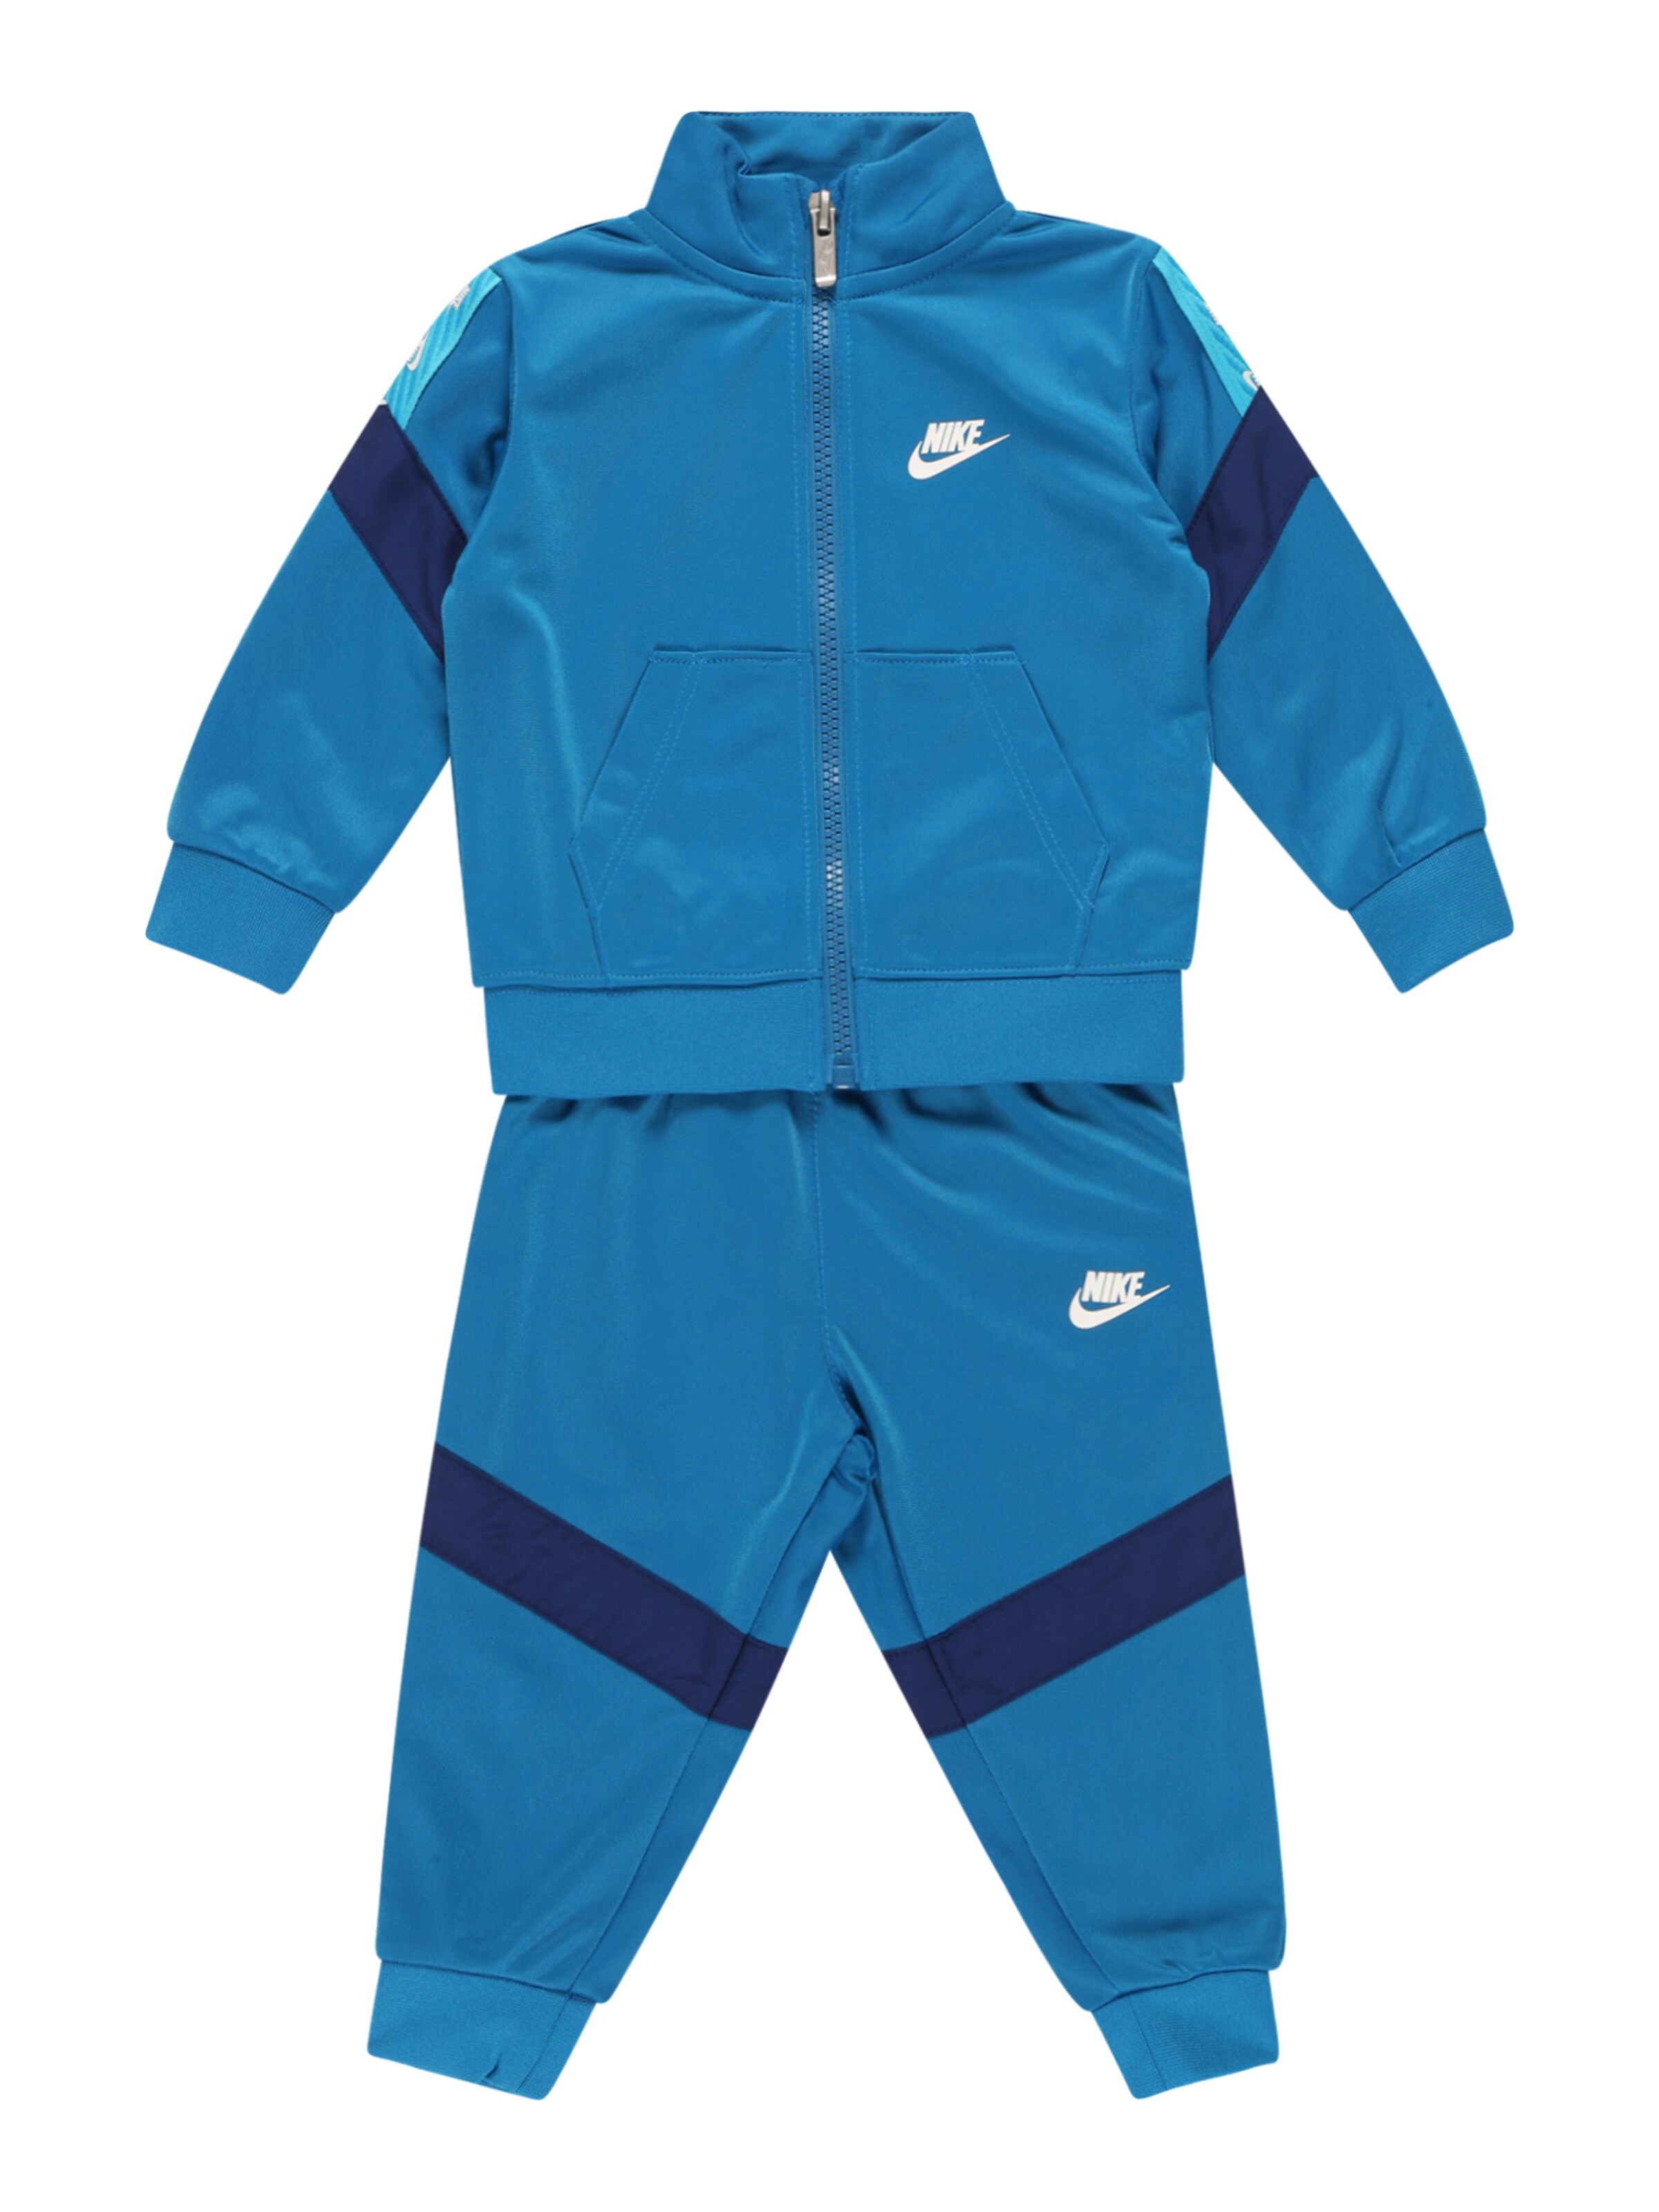 Enfants 92-140 Survêtement Nike Sportswear en Bleu Ciel, Bleu Foncé 